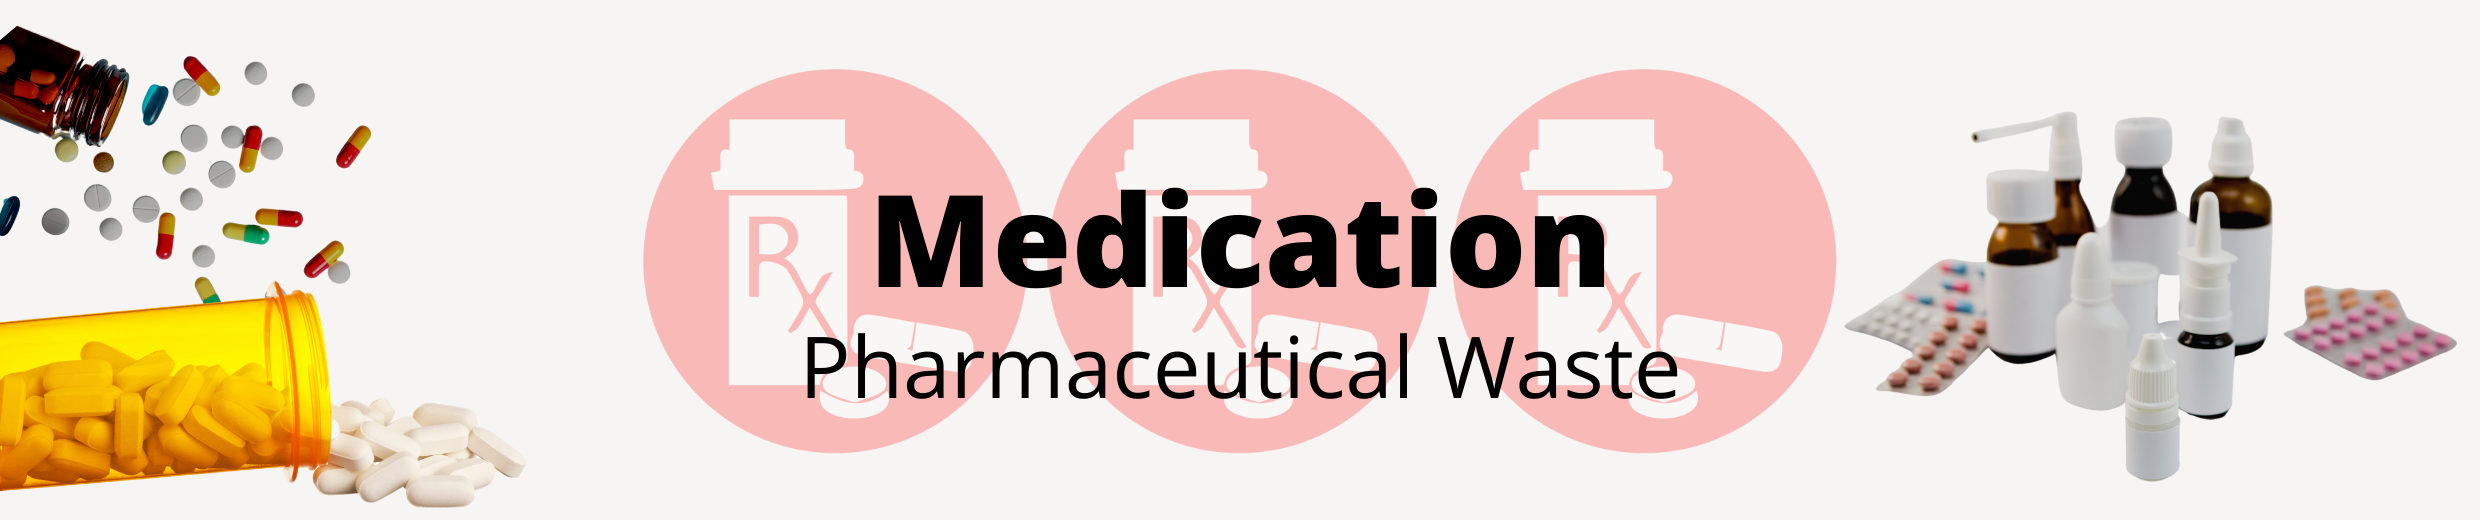 Medication Pharmaceutical Waste